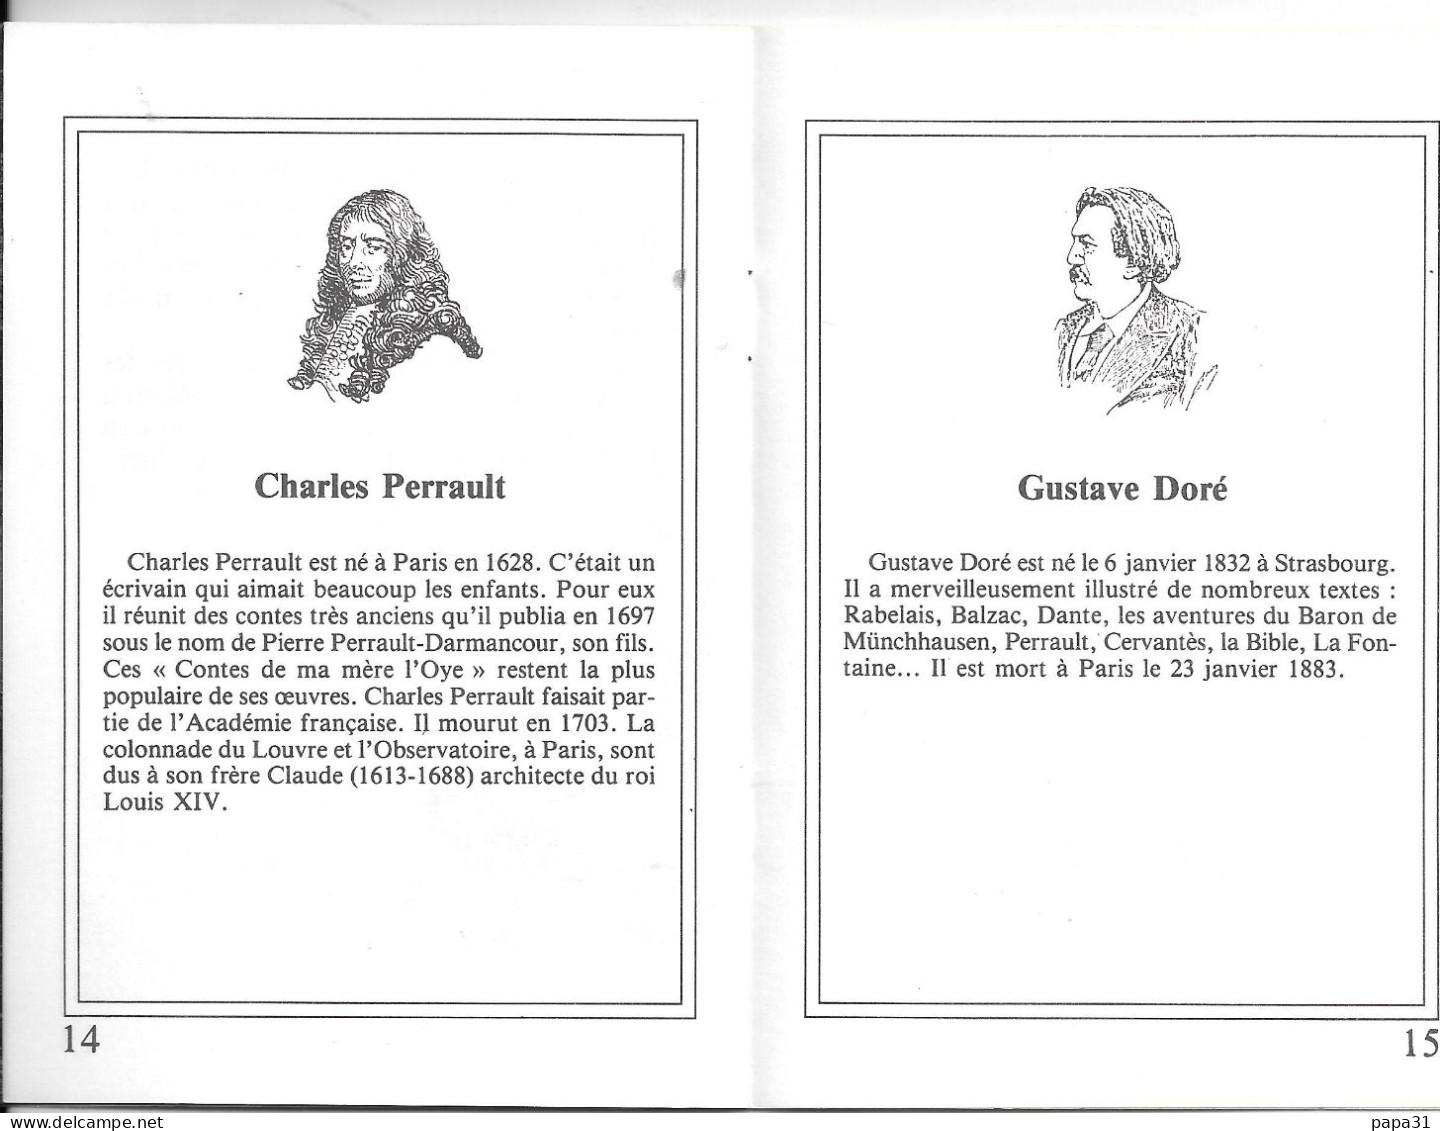 Carte Postale Livre   " LE PETIT POUCER " d'après Charles Perrault